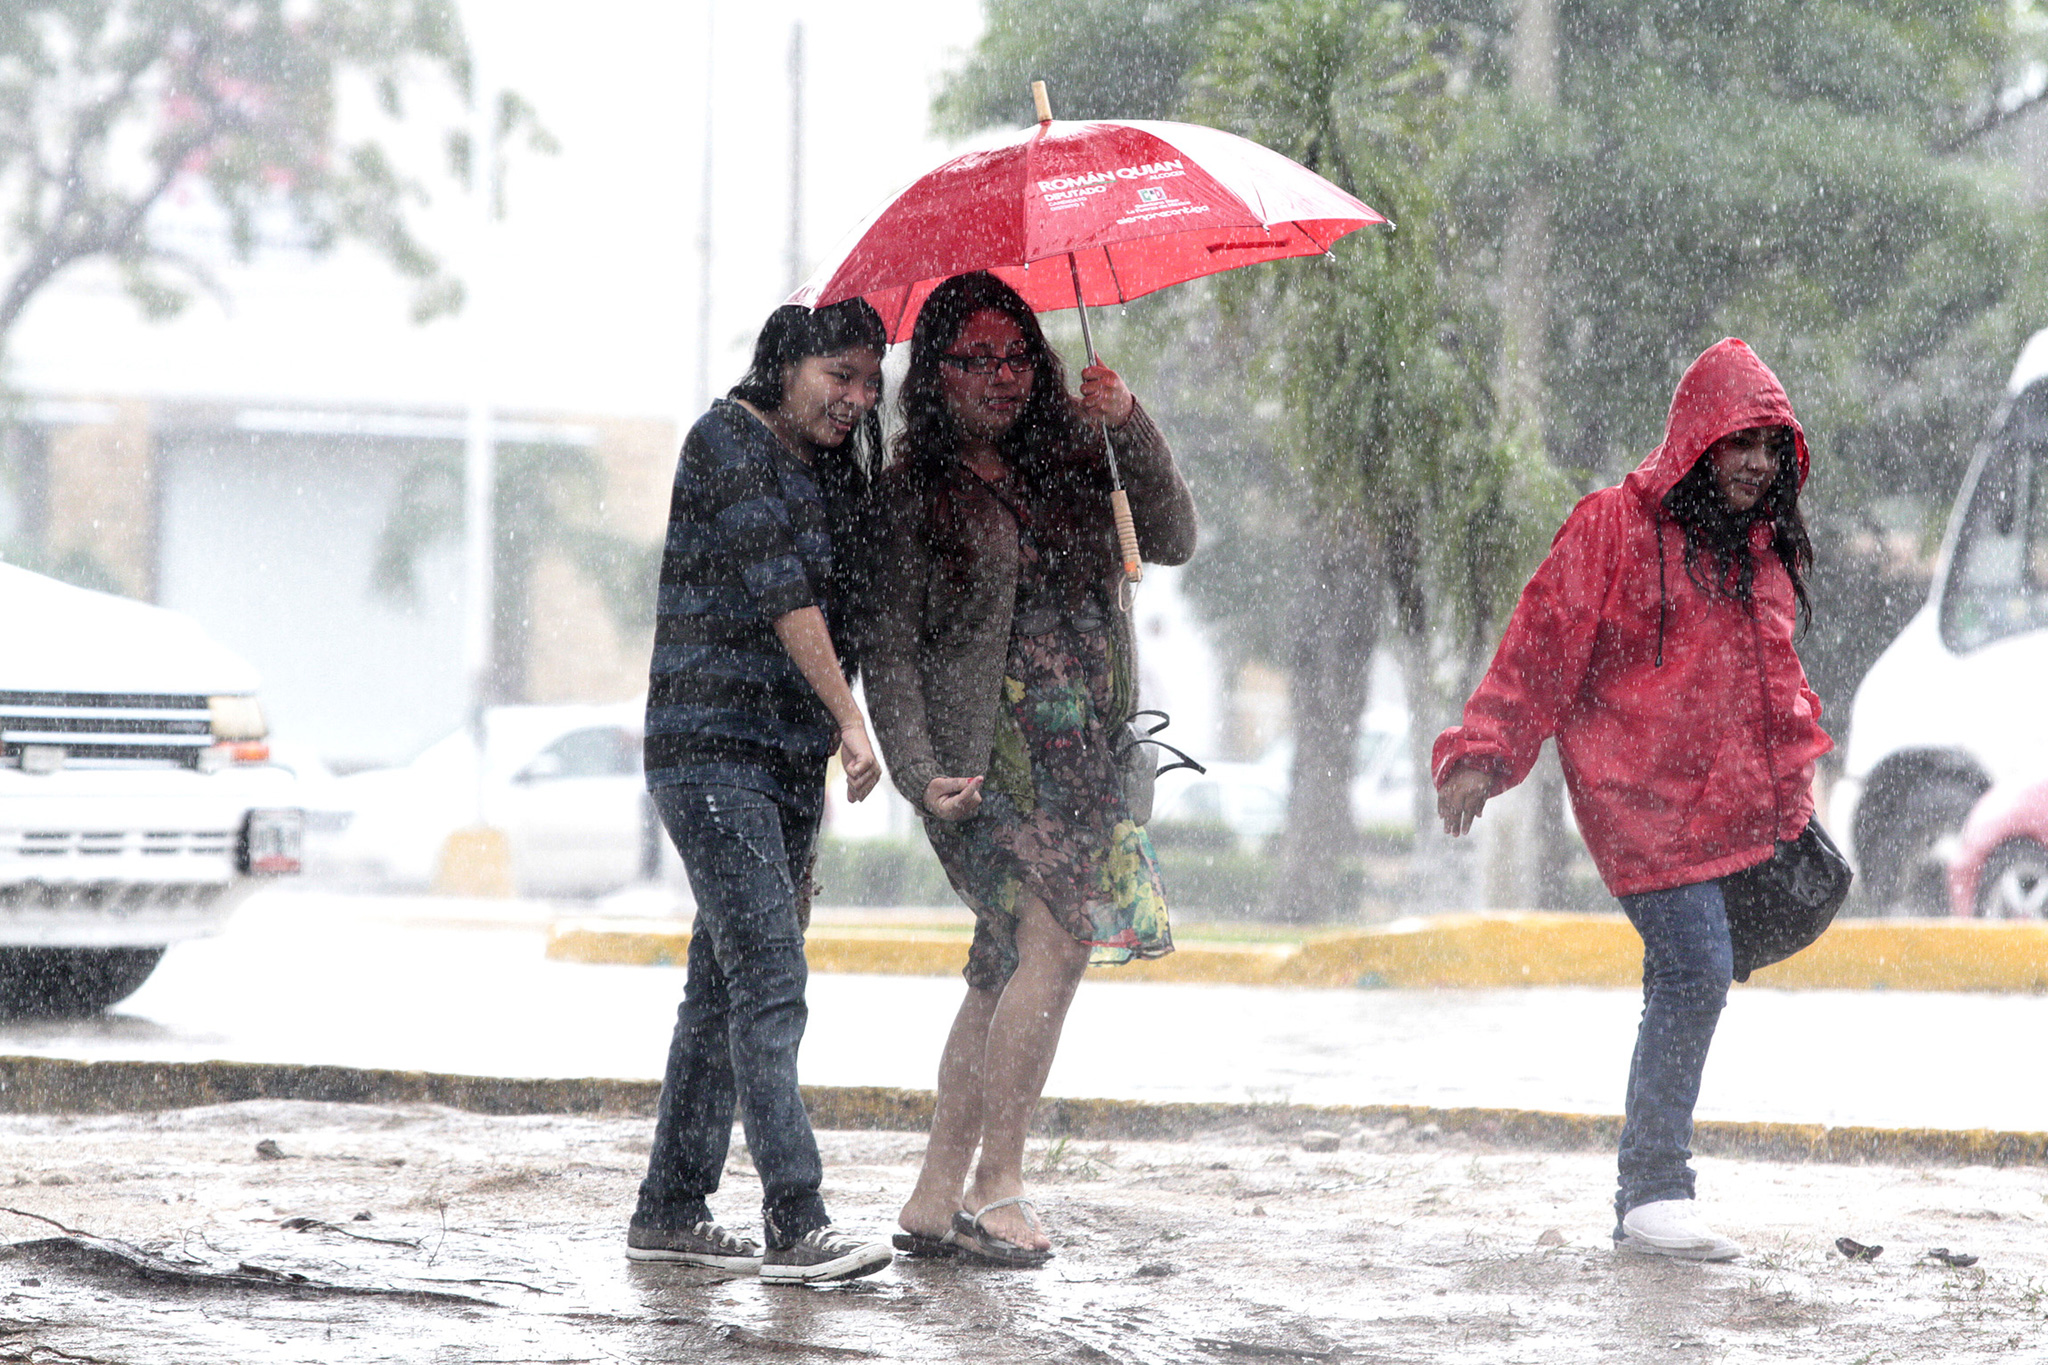  LLuvias y fuertes vientos afectarán gran parte del país